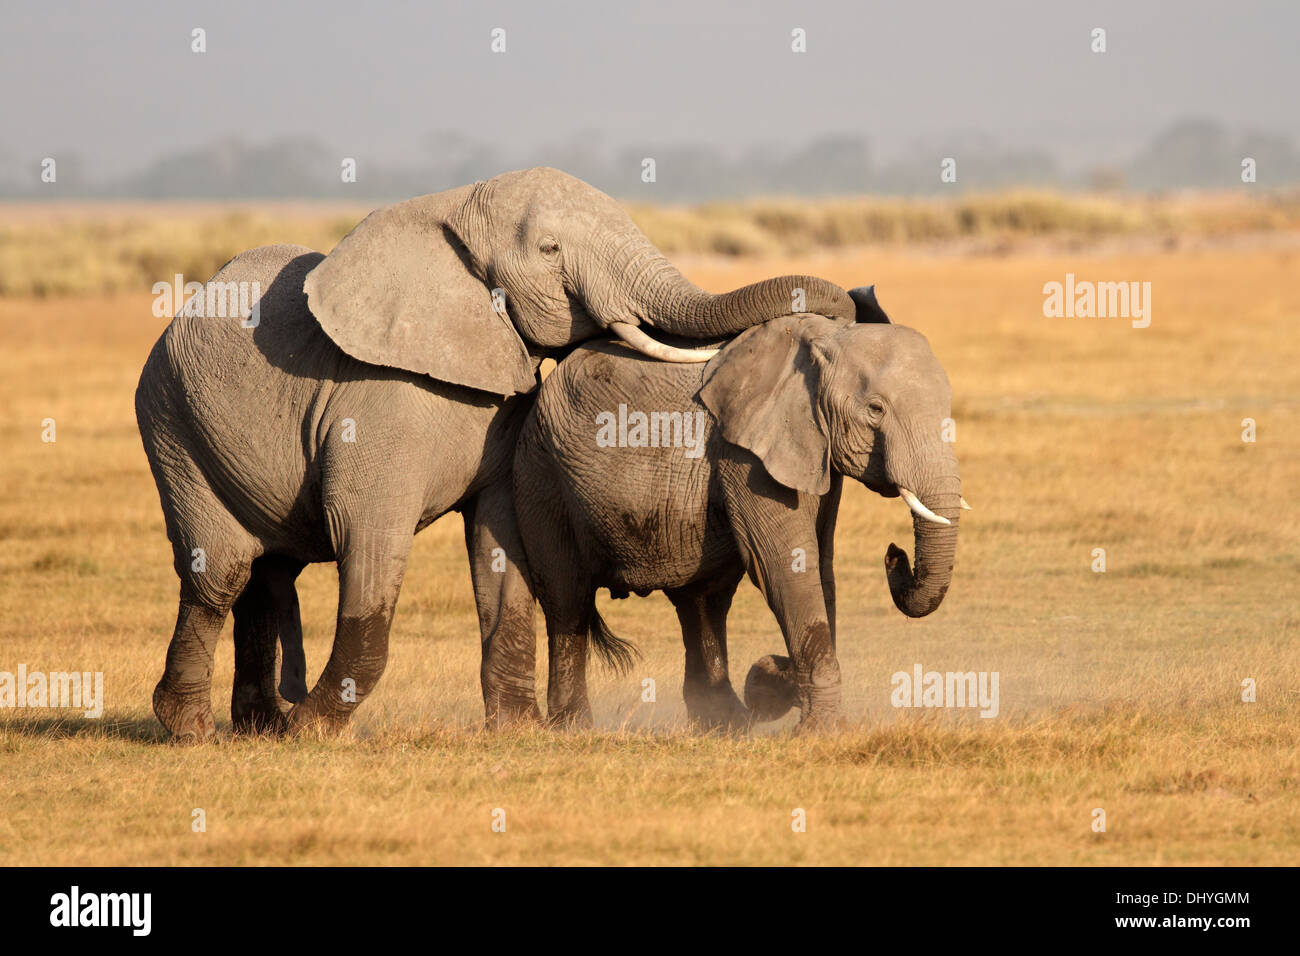 African elephants (Loxodonta africana) mating, Amboseli National Park, Kenya Stock Photo